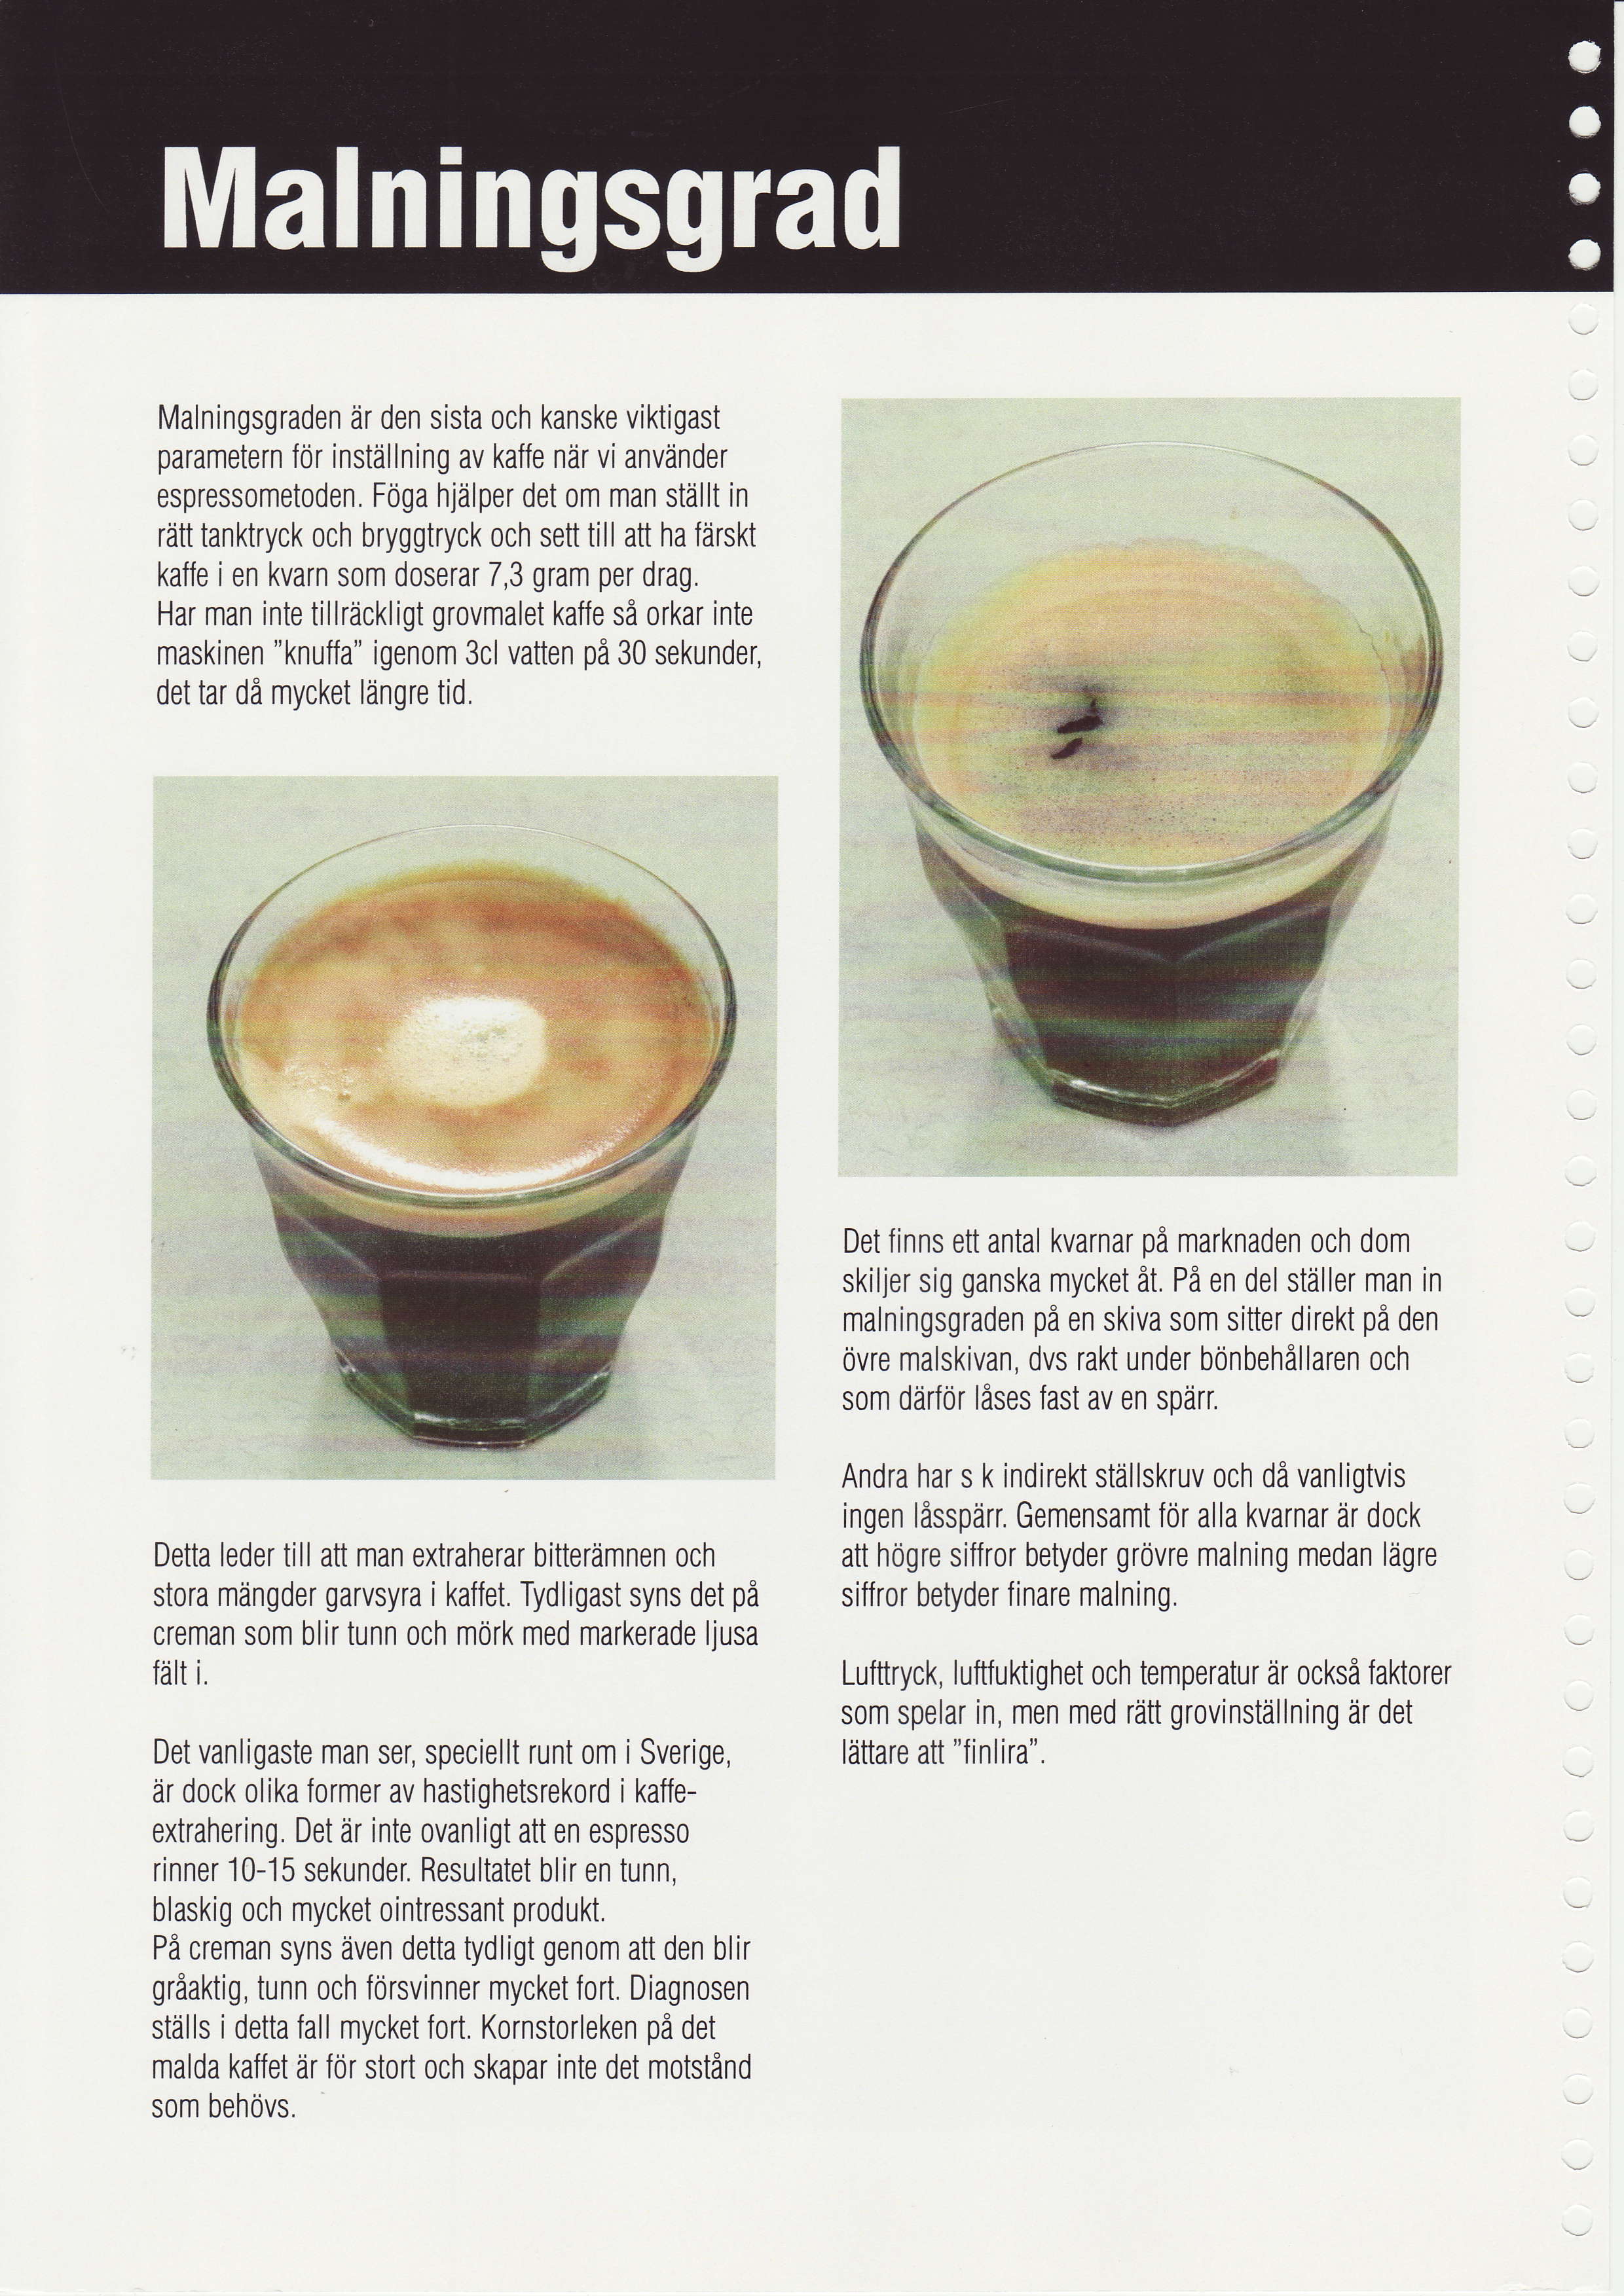 Malningsgraden dr sista och kanske viktigast parametern for inst:illning av kaffe ndr vi anvdnder espressometoden Fdga hjiilper det om man stiillt in rdttanktryck och bryggtryck och settill att ha